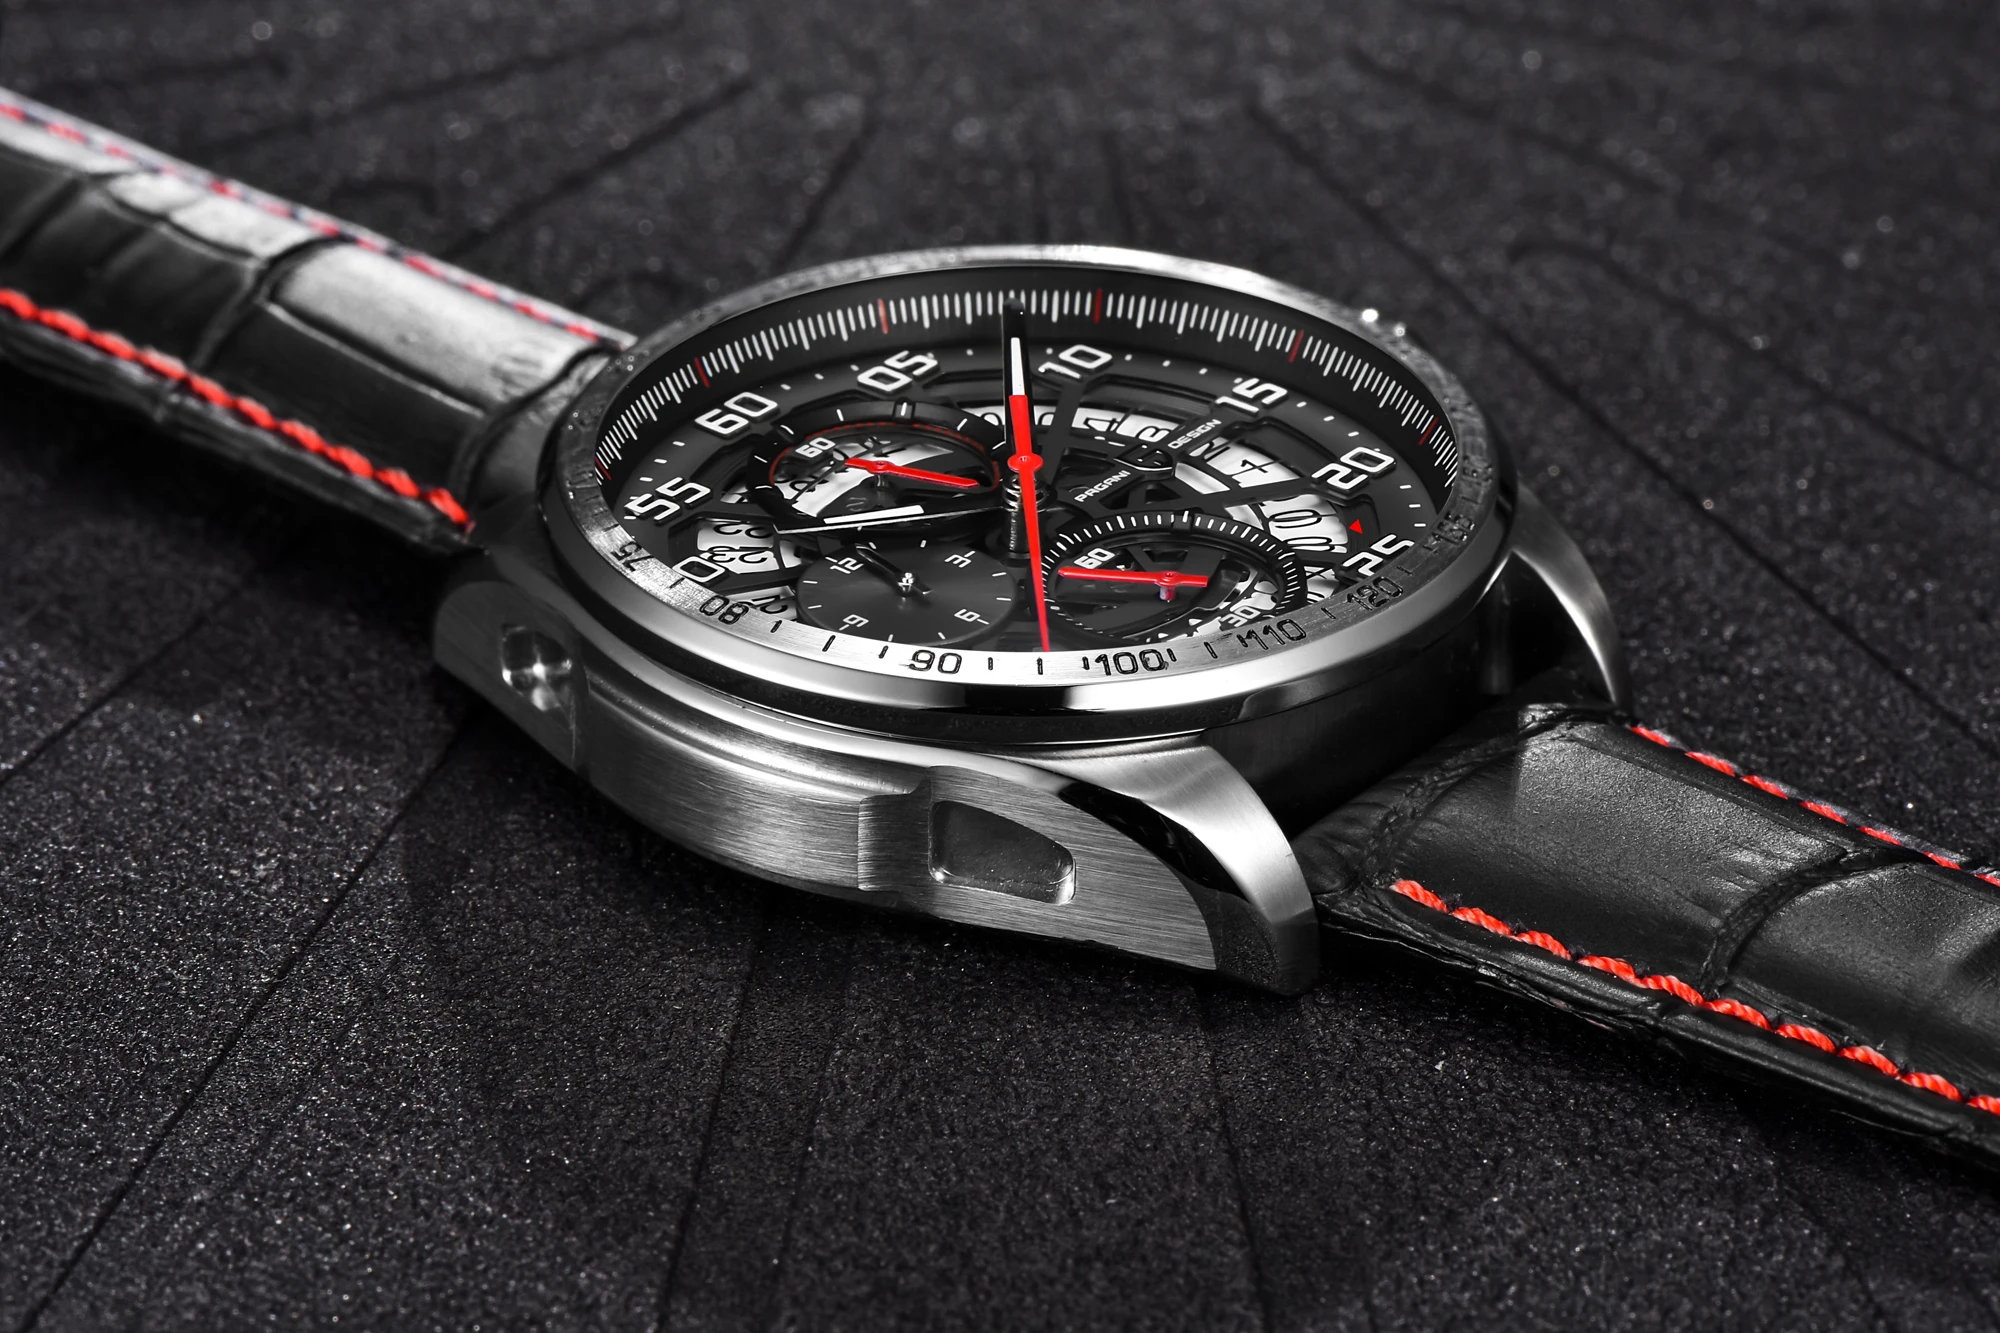 PAGANI Дизайн Avant Sport 3D большой циферблат кварцевые мужские часы Роскошные военные армейские черные стальные часы водонепроницаемые наручные часы с хронографом